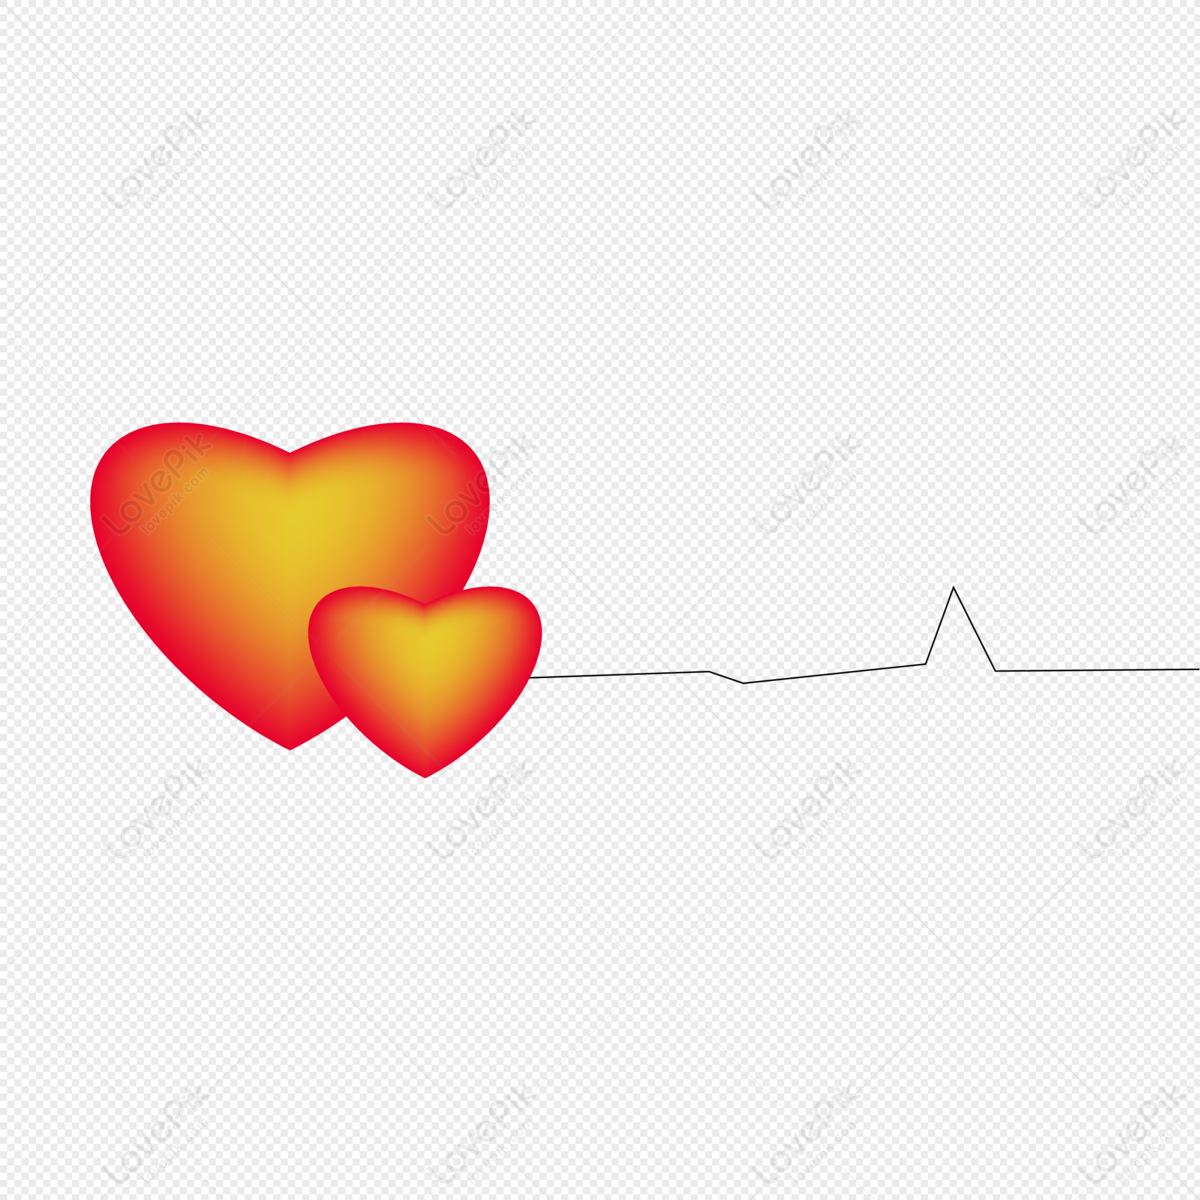 Hãy dành chút thời gian để nhìn vào bức ảnh về trái tim màu đỏ này. Đây là biểu tượng của tình yêu và đam mê. Có lẽ con tim bạn cũng đang đập mạnh với những cảm xúc tương tự, hãy để nó được bay cao cùng bức tranh trái tim này.